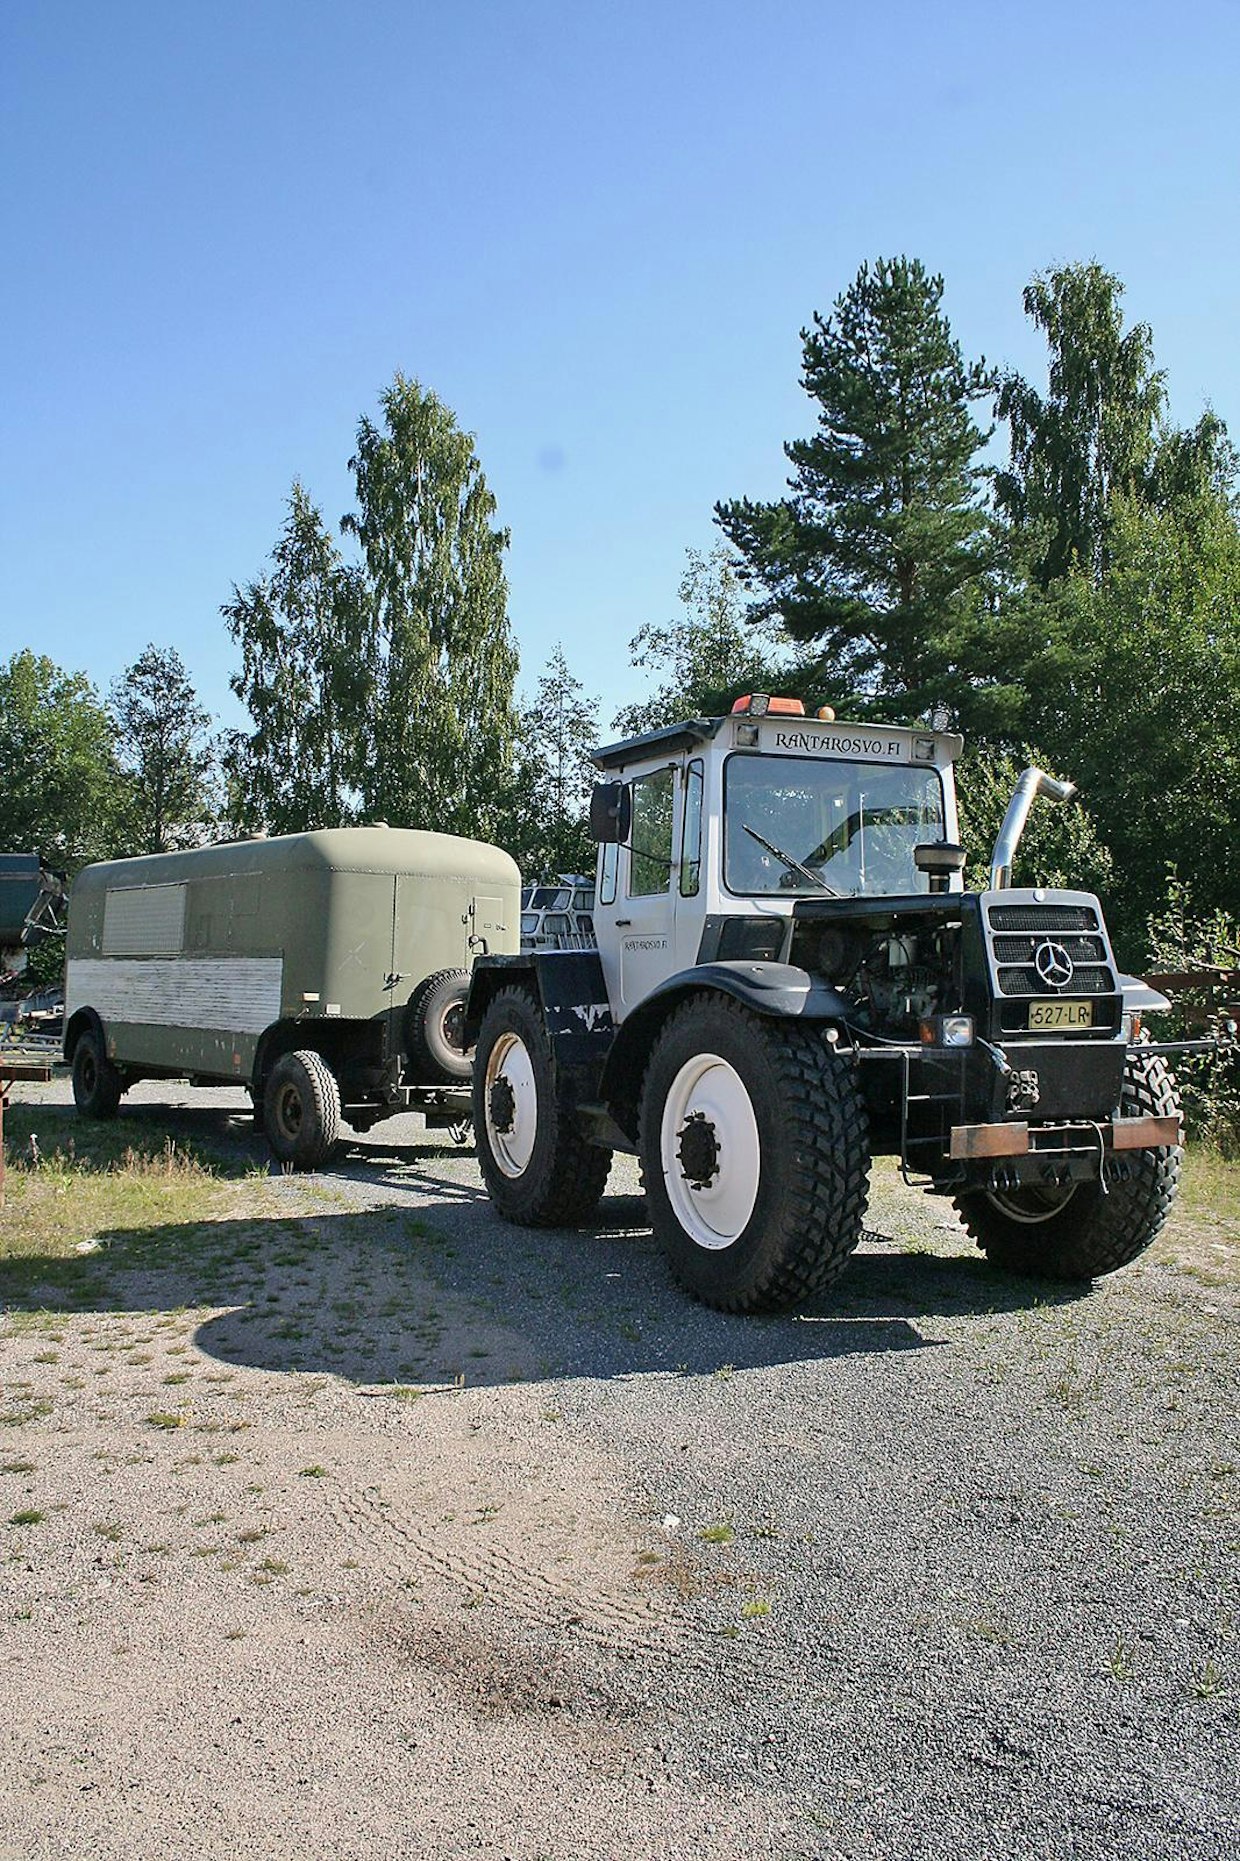 MB Tracin hinauksessa on Ruotsin armeijan entinen kirurgivaunu, joka on uusiokalustettu liikkuvaksi kahviokioskiksi.